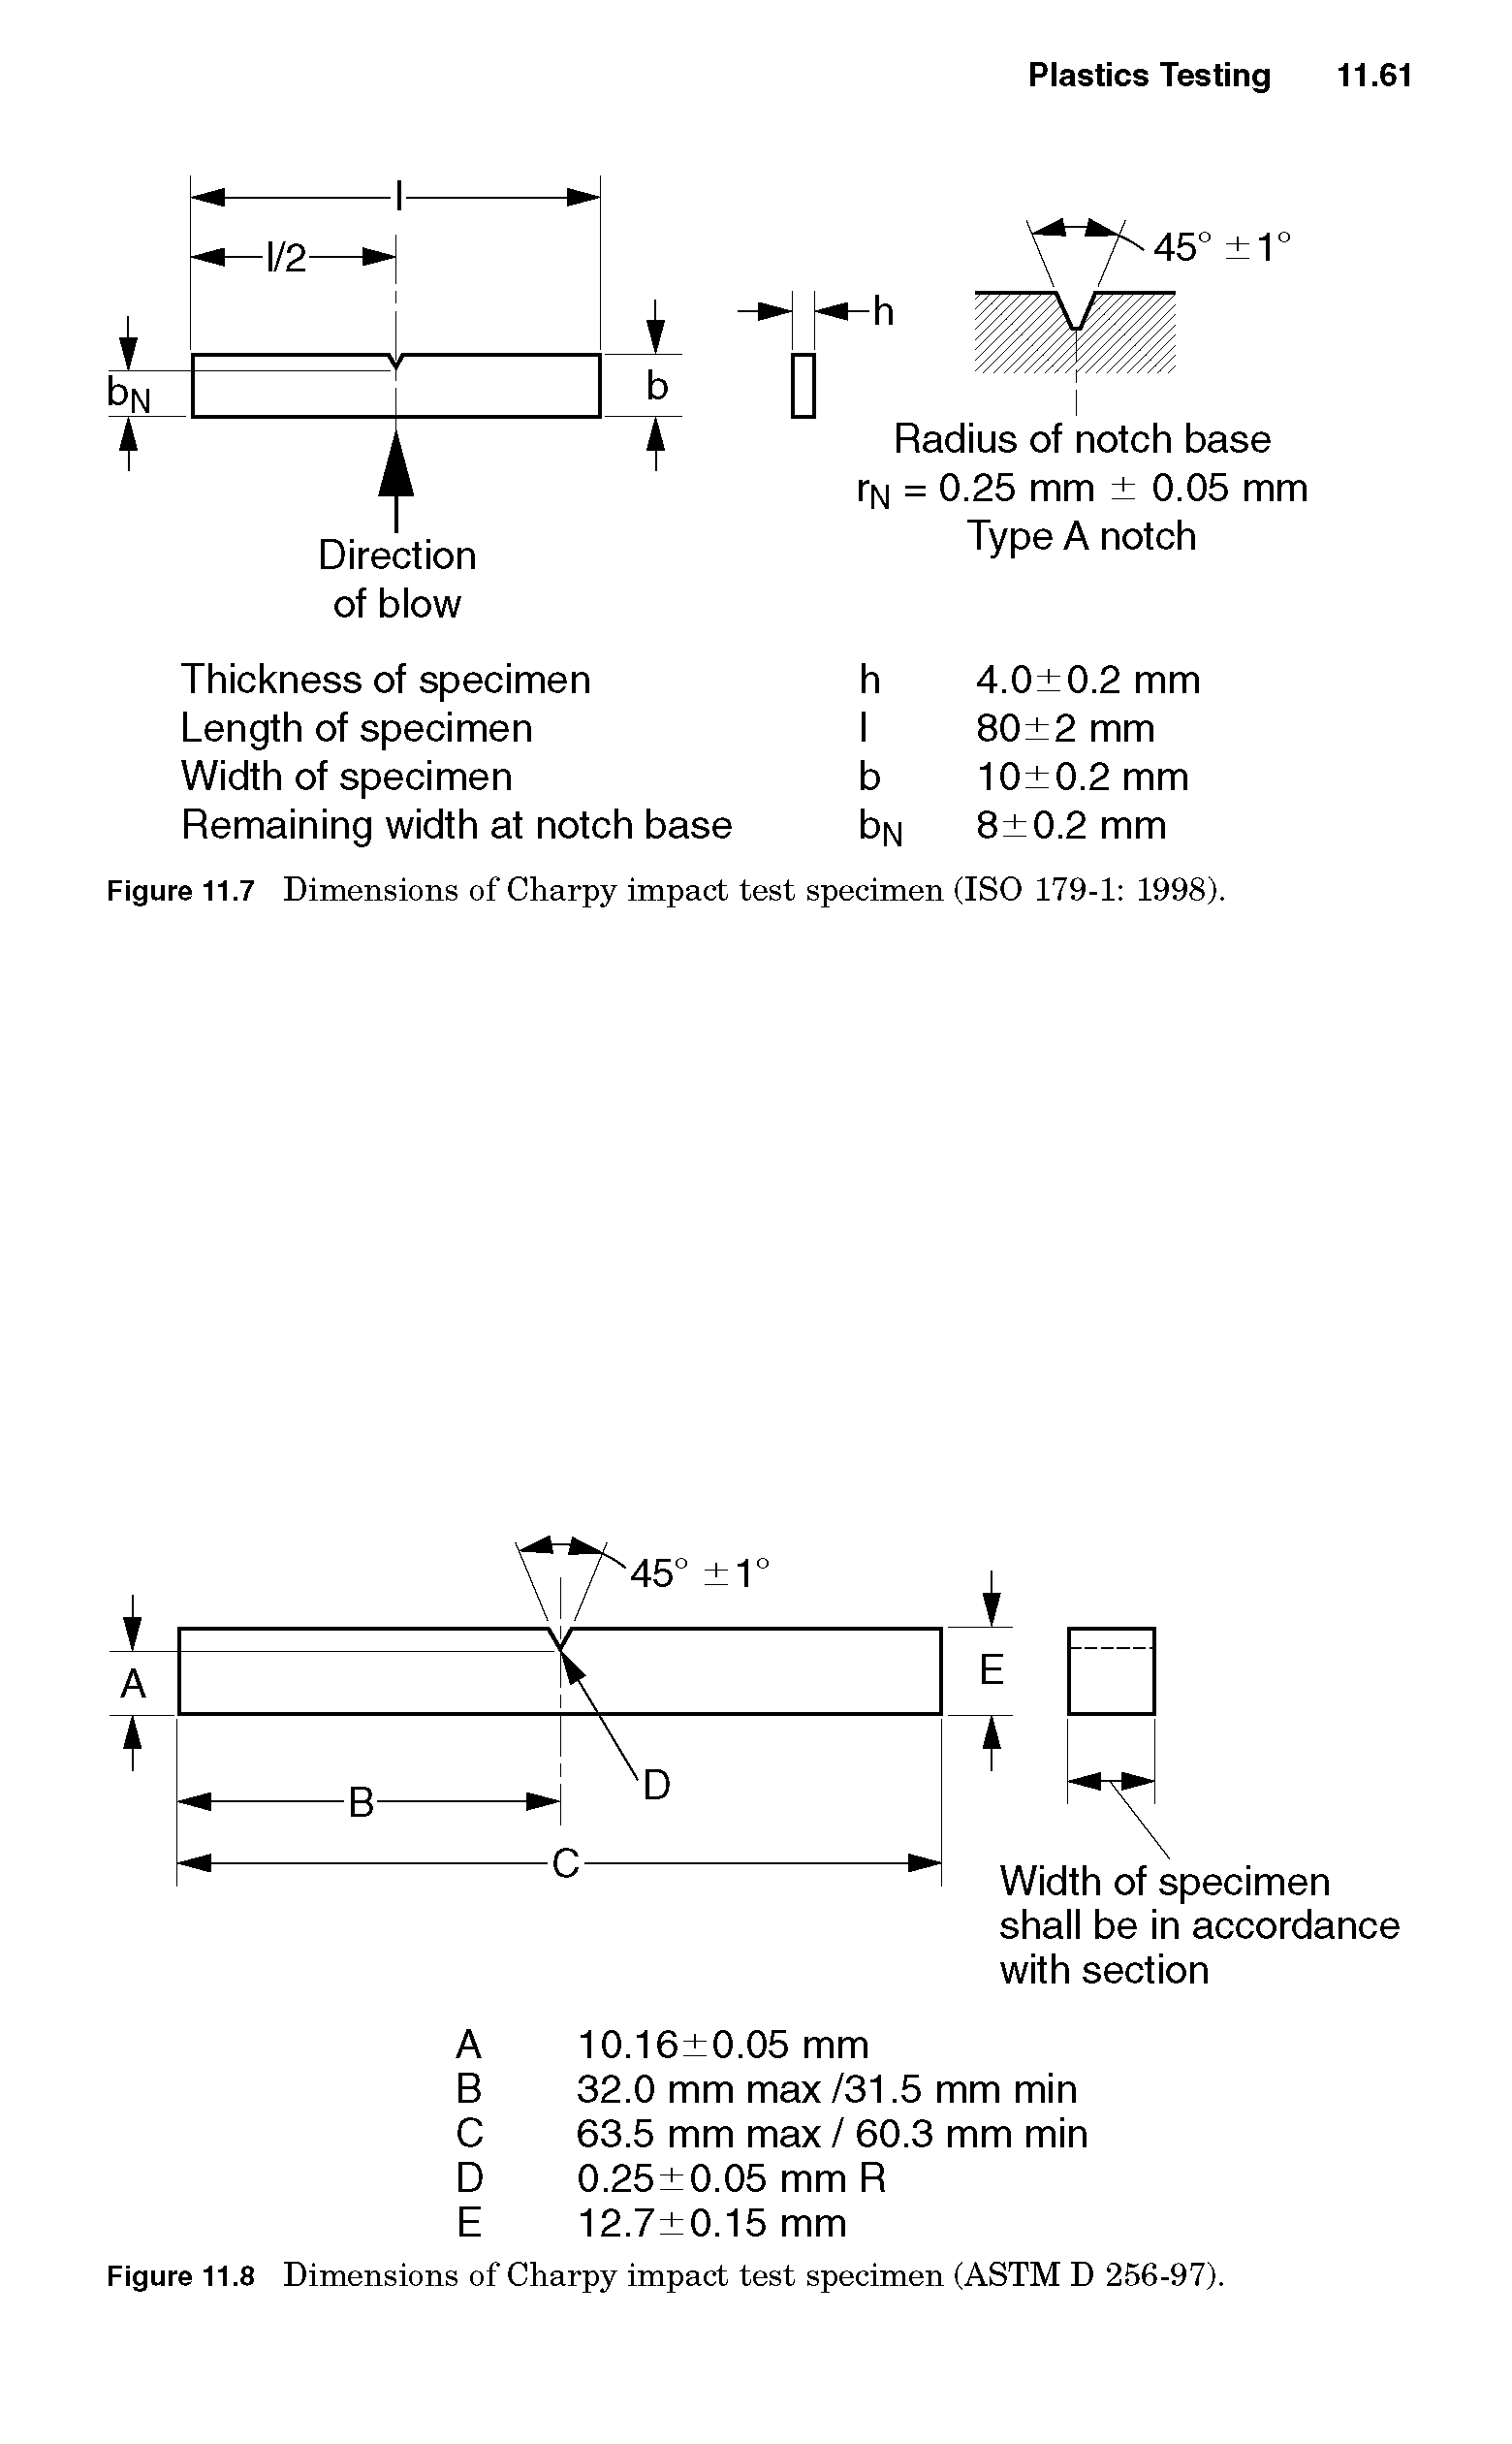 Figure 11.8 Dimensions of Charpy impact test specimen (ASTM D 256-97).